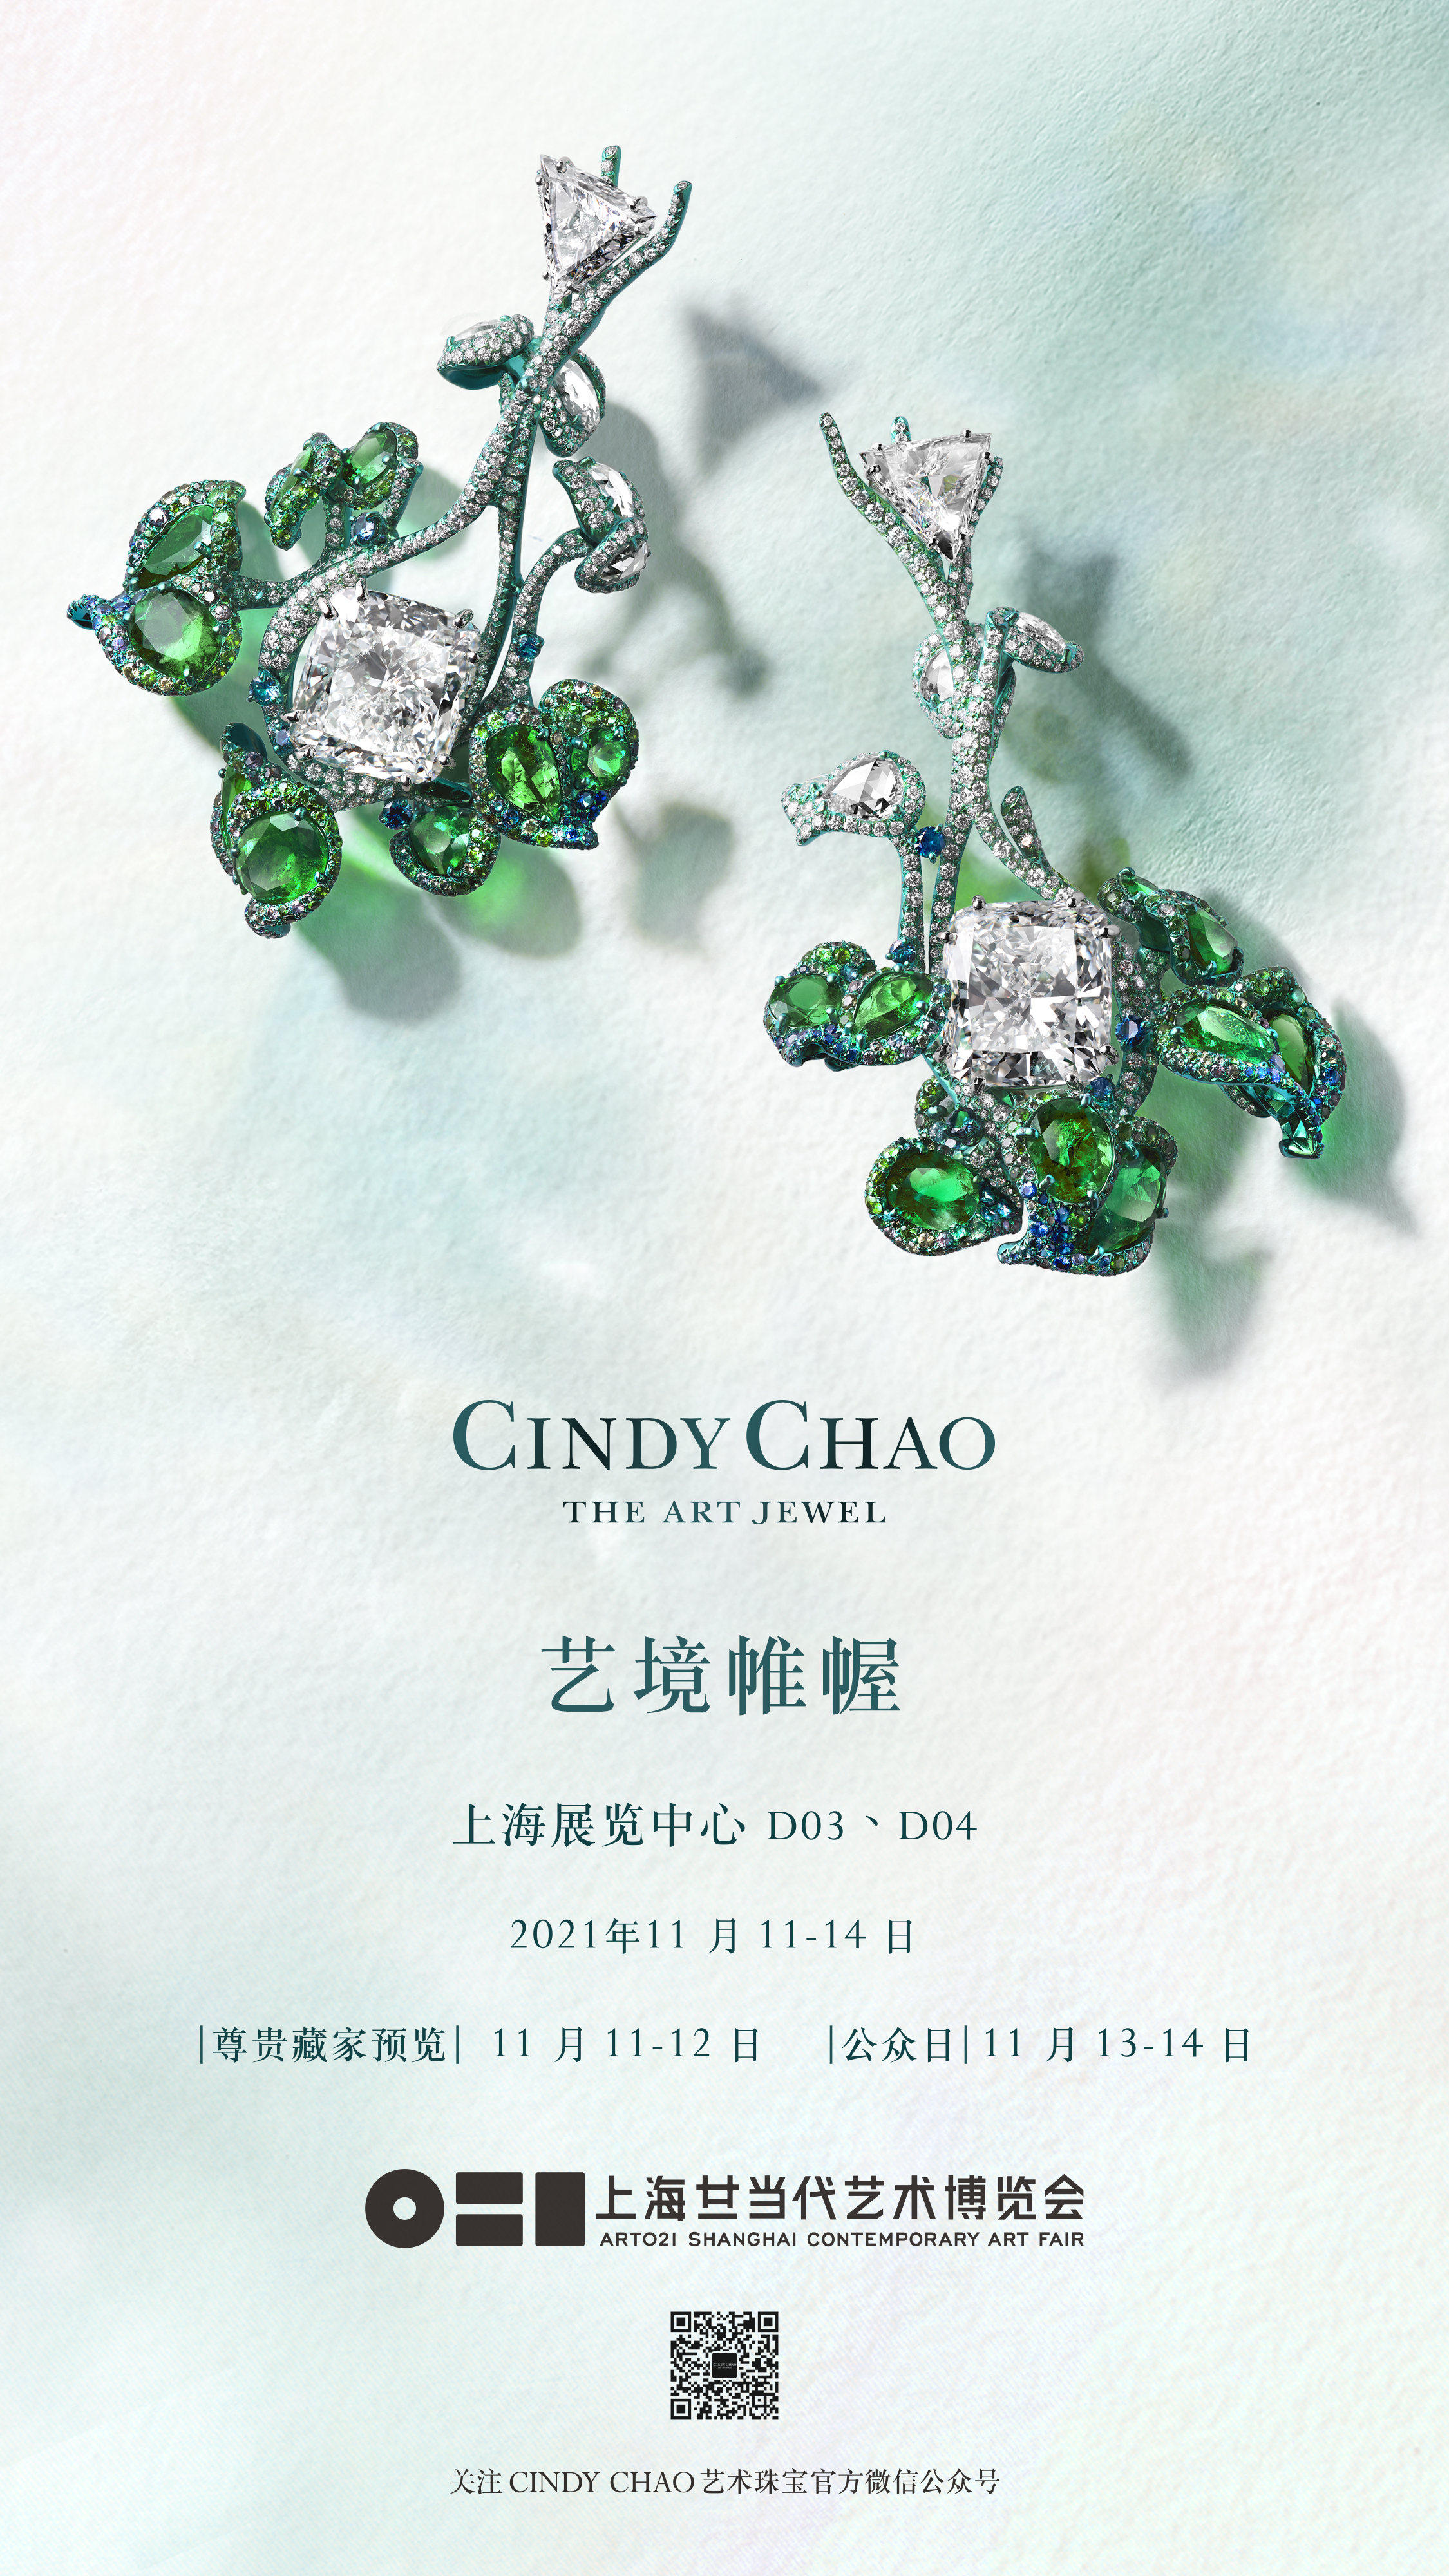 艺境帷幄 博采东西 CINDY CHAO艺术珠宝2021大师系列全新创作 亮相ART021上海廿一当代艺术博览会